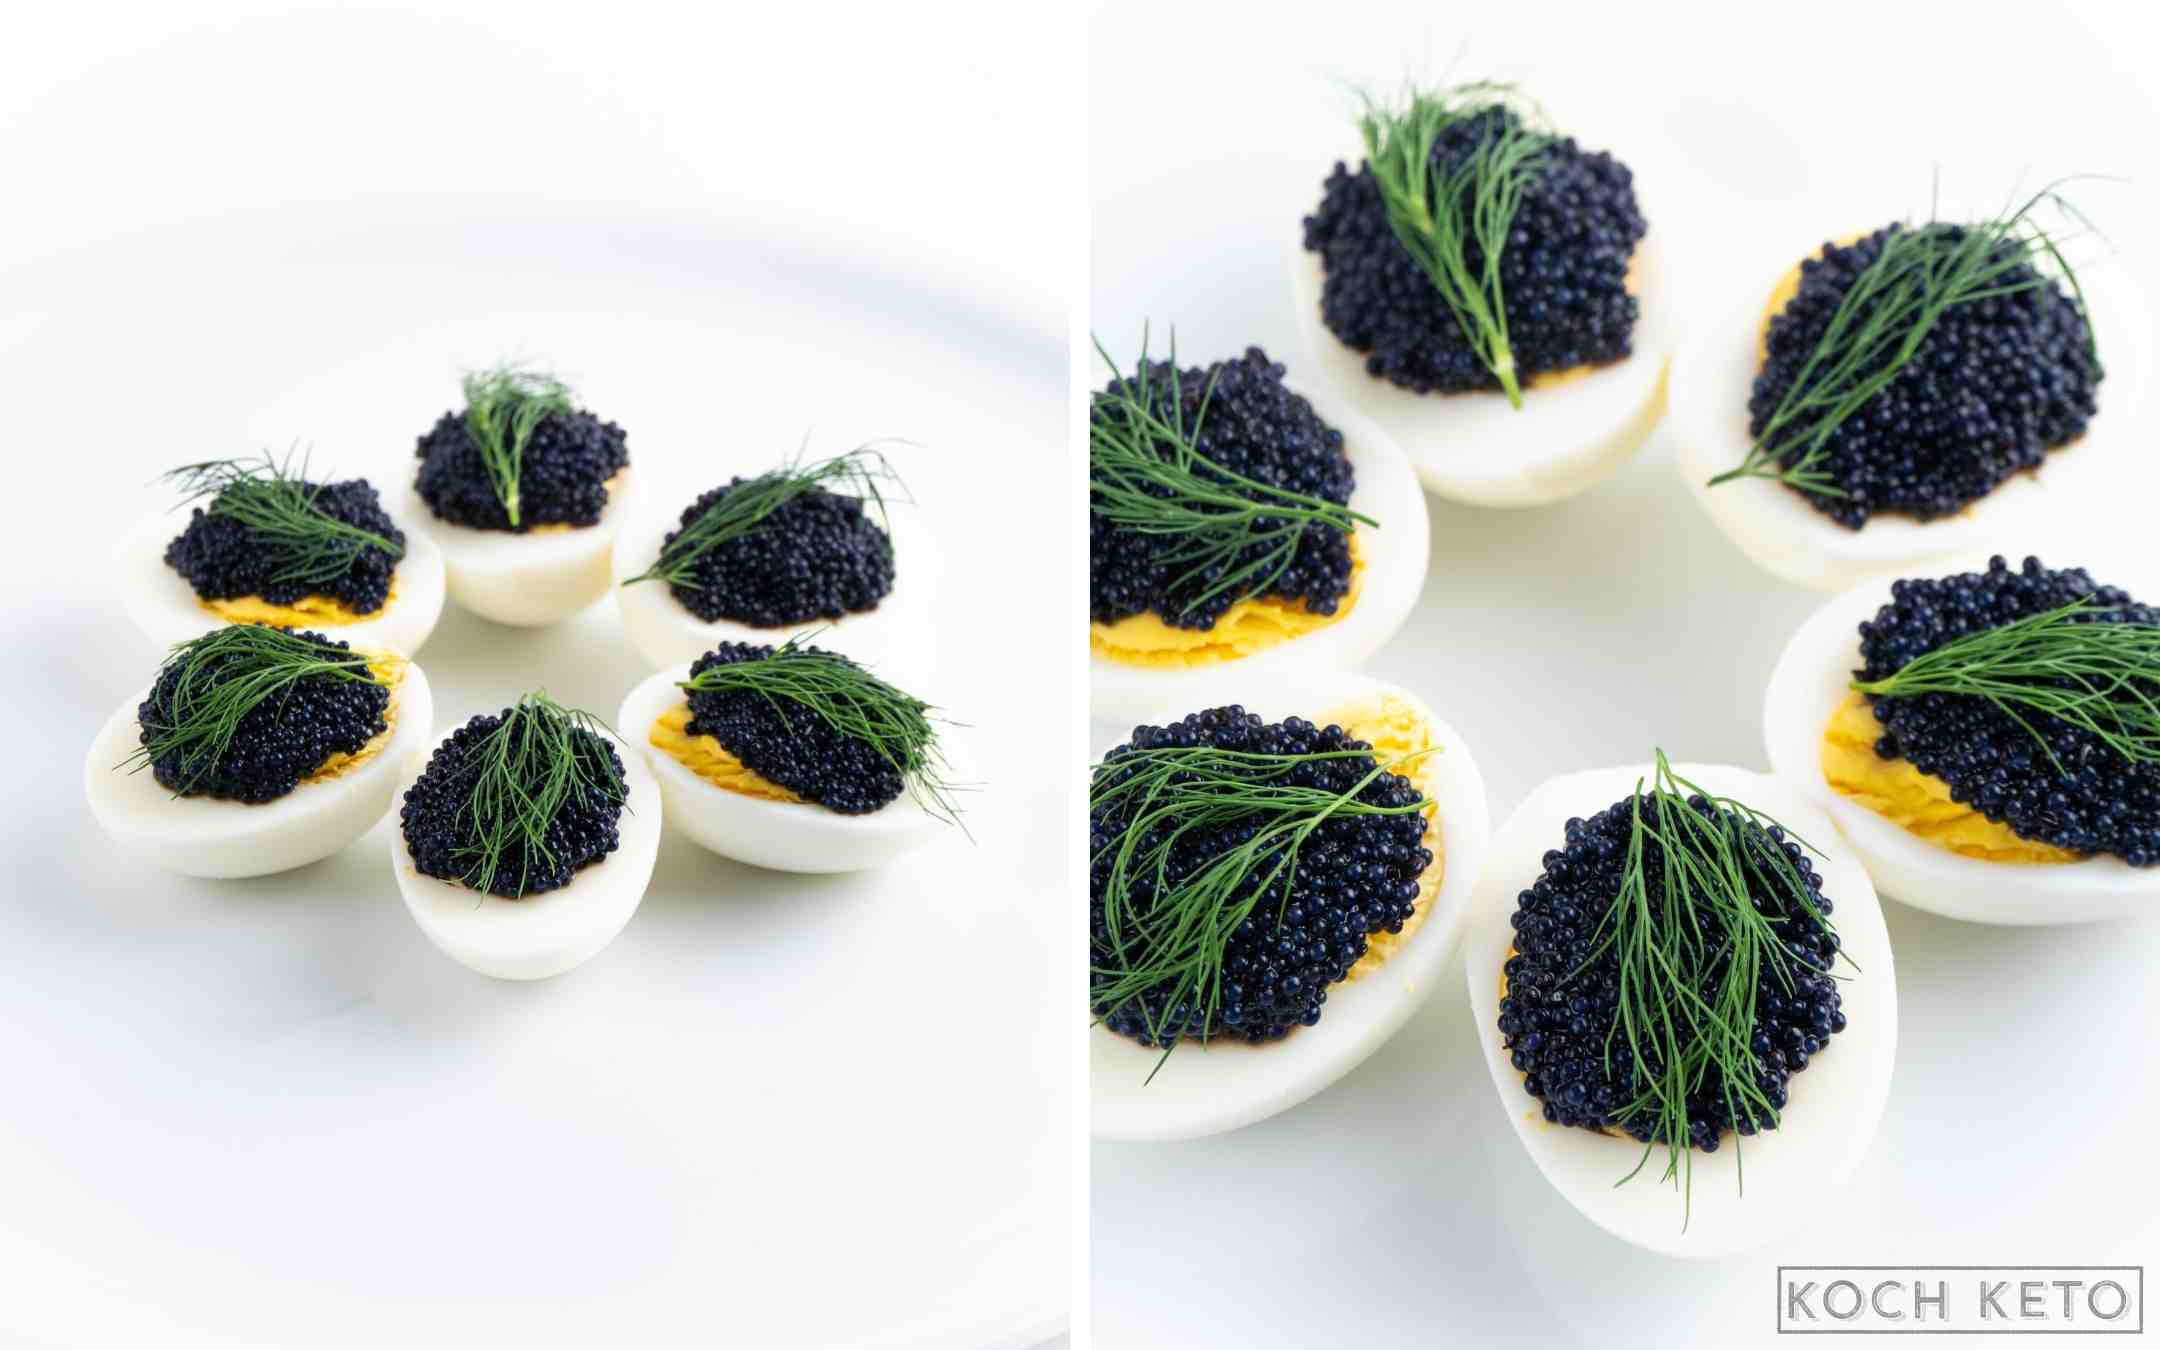 Eier mit Kaviar als schneller Keto Snack ohne Kohlenhydrate zum Abnehmen Desktop Image Collage